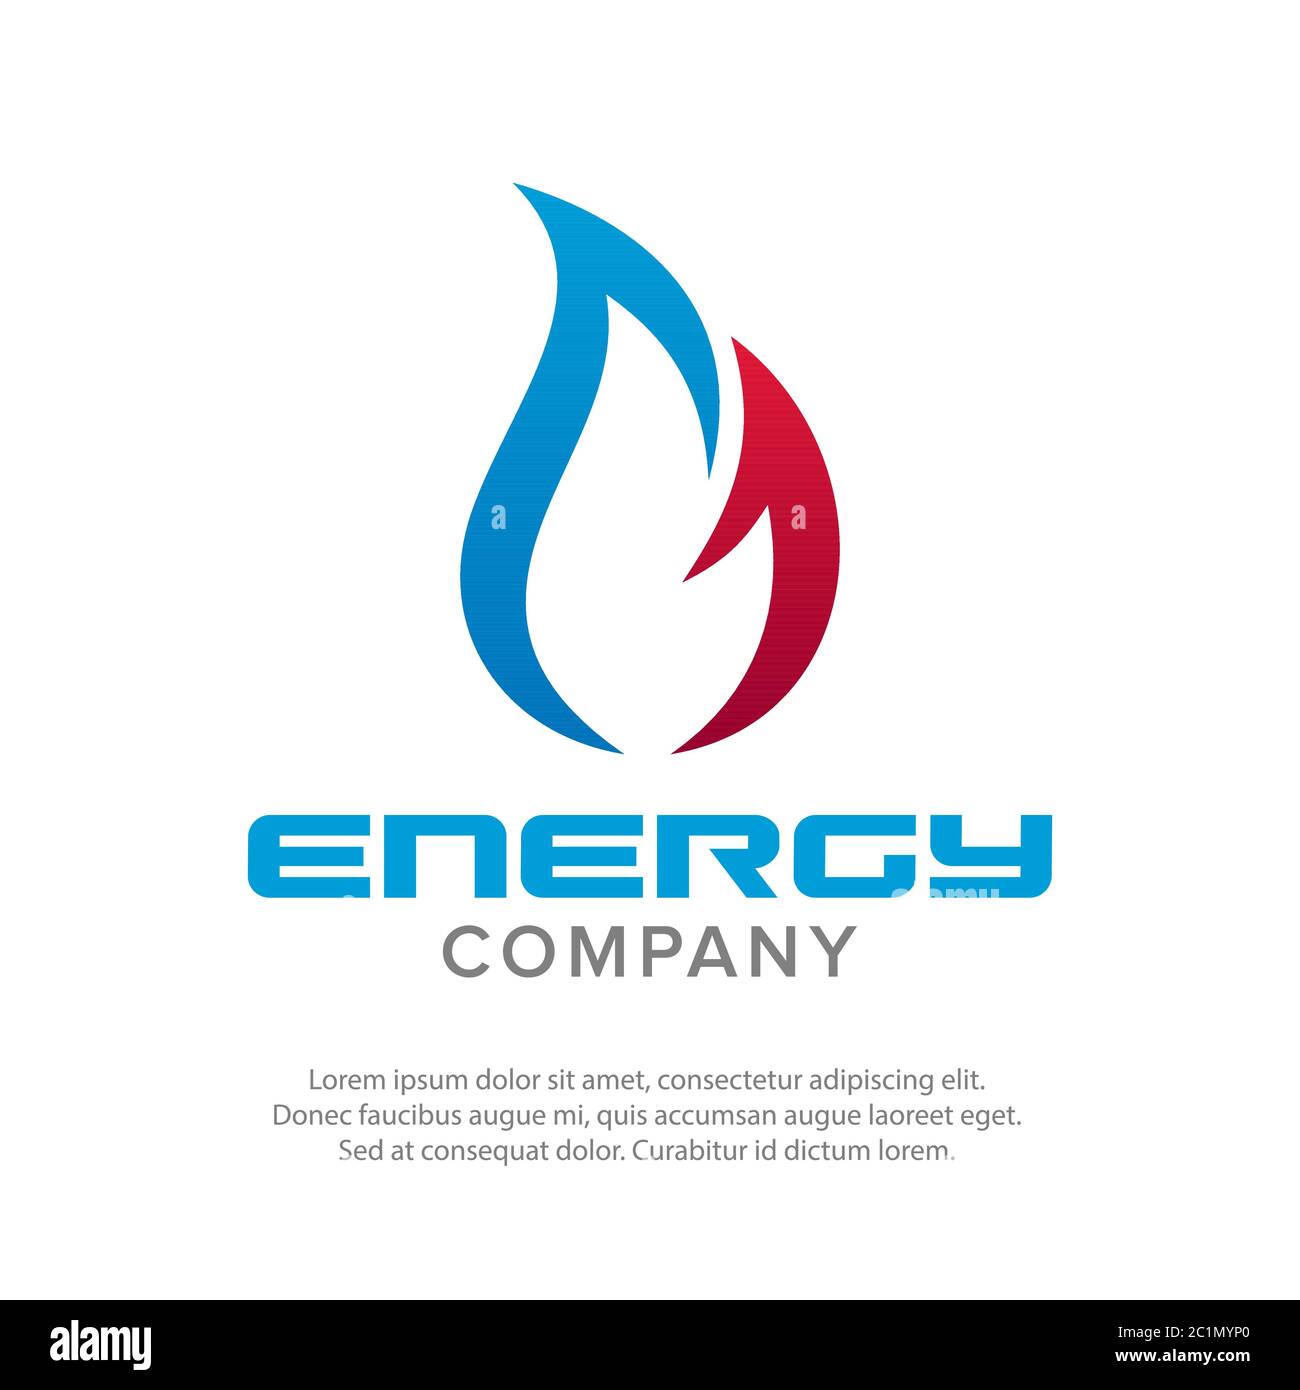 Immagine vettoriale di un logo Flame. Adatto per il logo e il branding di un'azienda petrolifera e del gas che produce energia per tutta la vita. Illustrazione Vettoriale